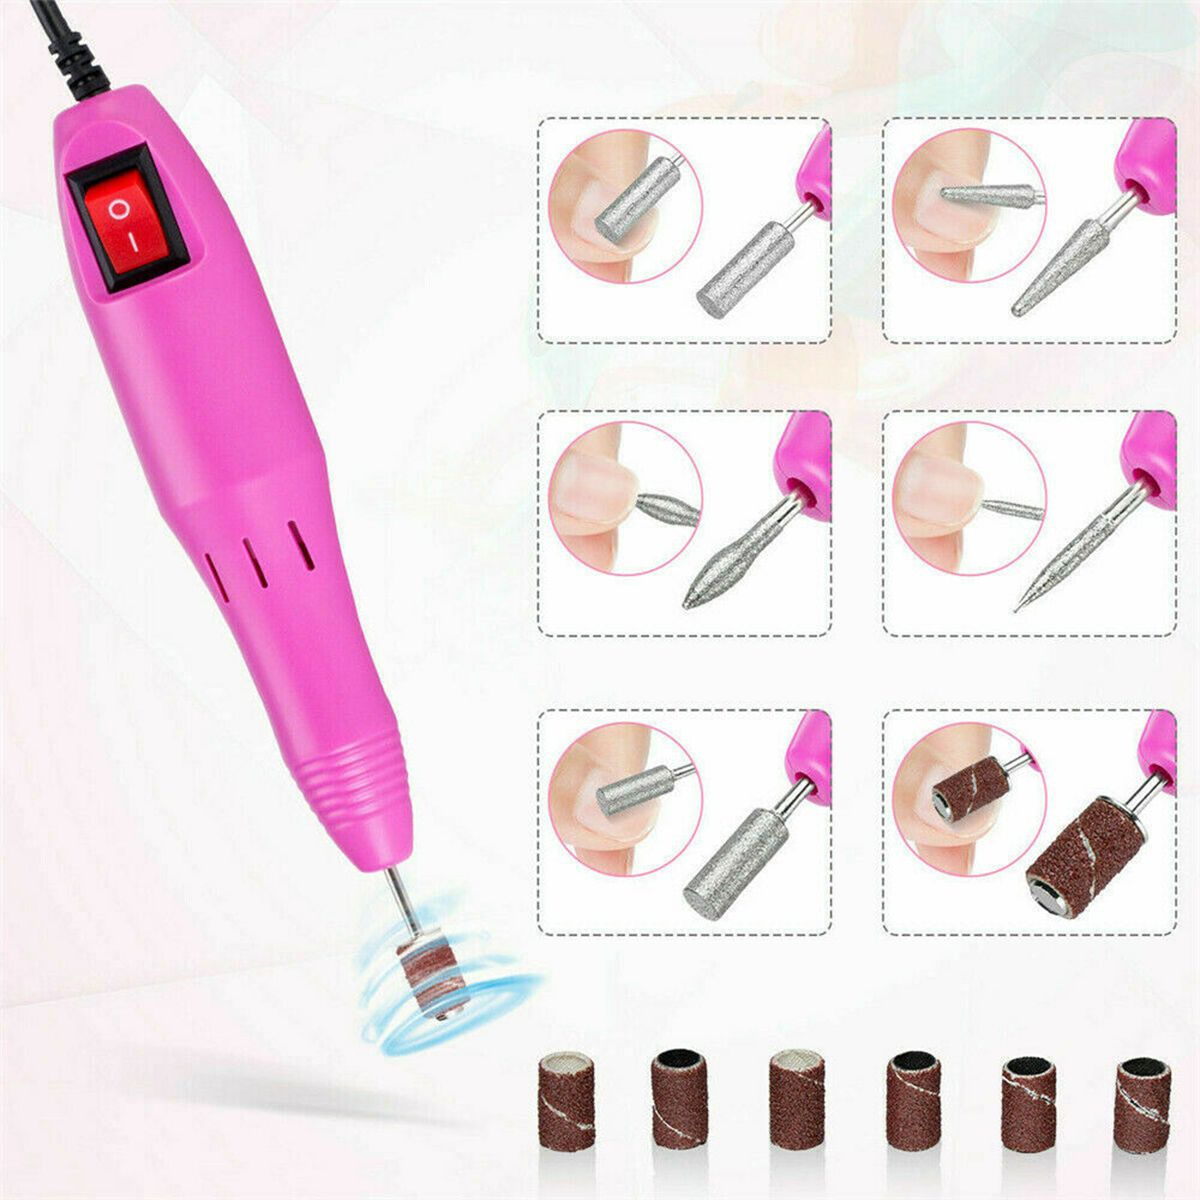 110220V-Electric-Nail-Drill-Pen-Set-Nail-File-Art-Manicure-Pedicure-Polish-Tools-1762898